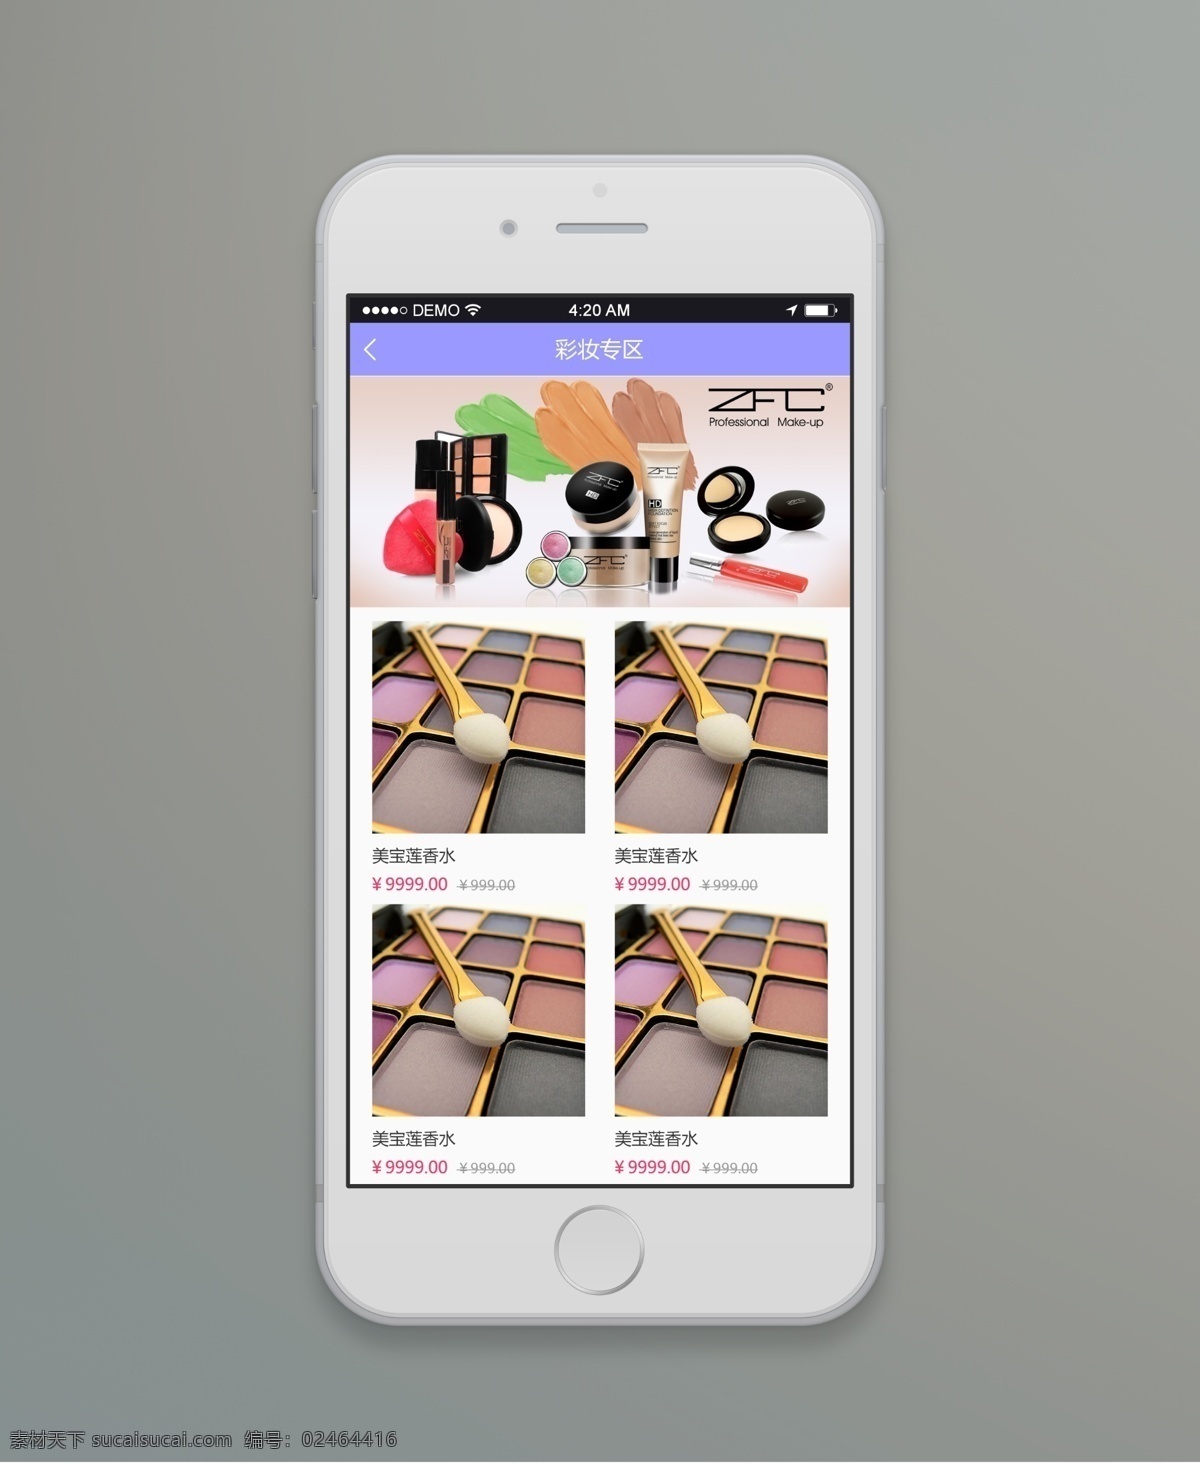 彩妆 专场 app 购物 电商 分享 时尚 紫色 彩妆专场 白色